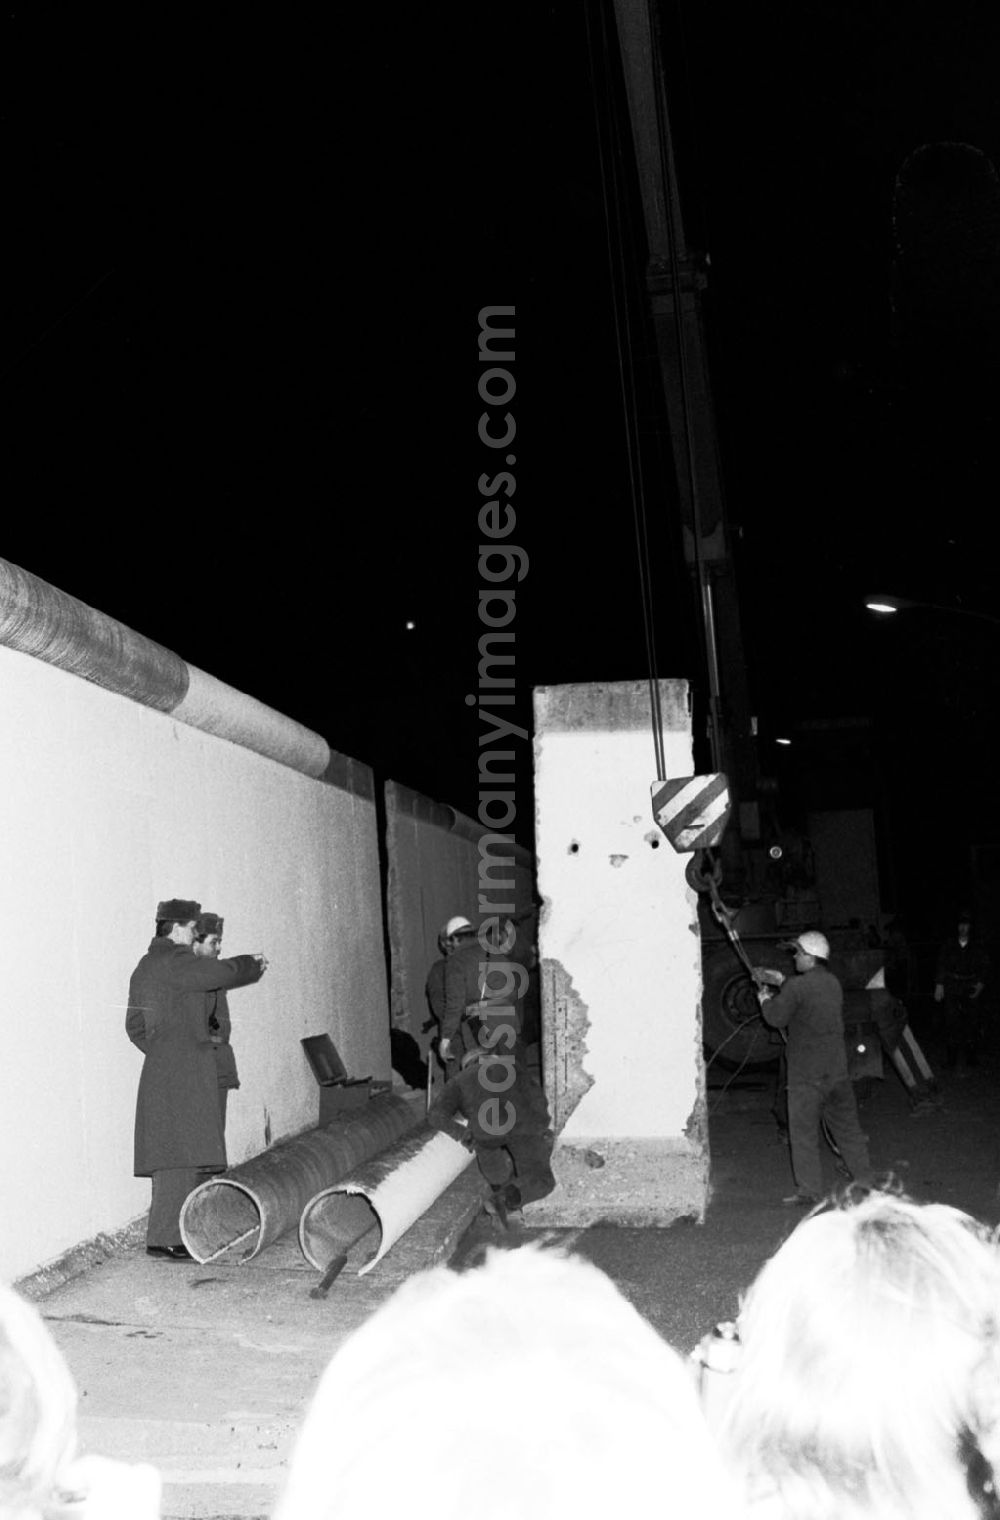 GDR image archive: Berlin - Nachtaufnahme: DDR-Grenzer schlagen eine Lücke in die Mauer am Brandenburger Tor. Ein Mauerstück / Mauer-Element wird an Hacken vom Kran befestigt. In Gegenwart des Bundeskanzlers und des Ministerpräsidenten der DDR wird an dieser symbolträchtigen Stelle ein Grenzübergang für Fußgänger eröffnet. Menschenmengen auf beiden Seiten bejubeln jedes herausgehobene Betonelement. Fotos und TV-Aufnahmen dieses Ereignisses werden später oft fälschlich als Abriss der Mauer beschrieben, obwohl es sich nur um die Einrichtung neuer Grenzübergänge handelte. Erst im Juni beginnt der offizielle Abriss.